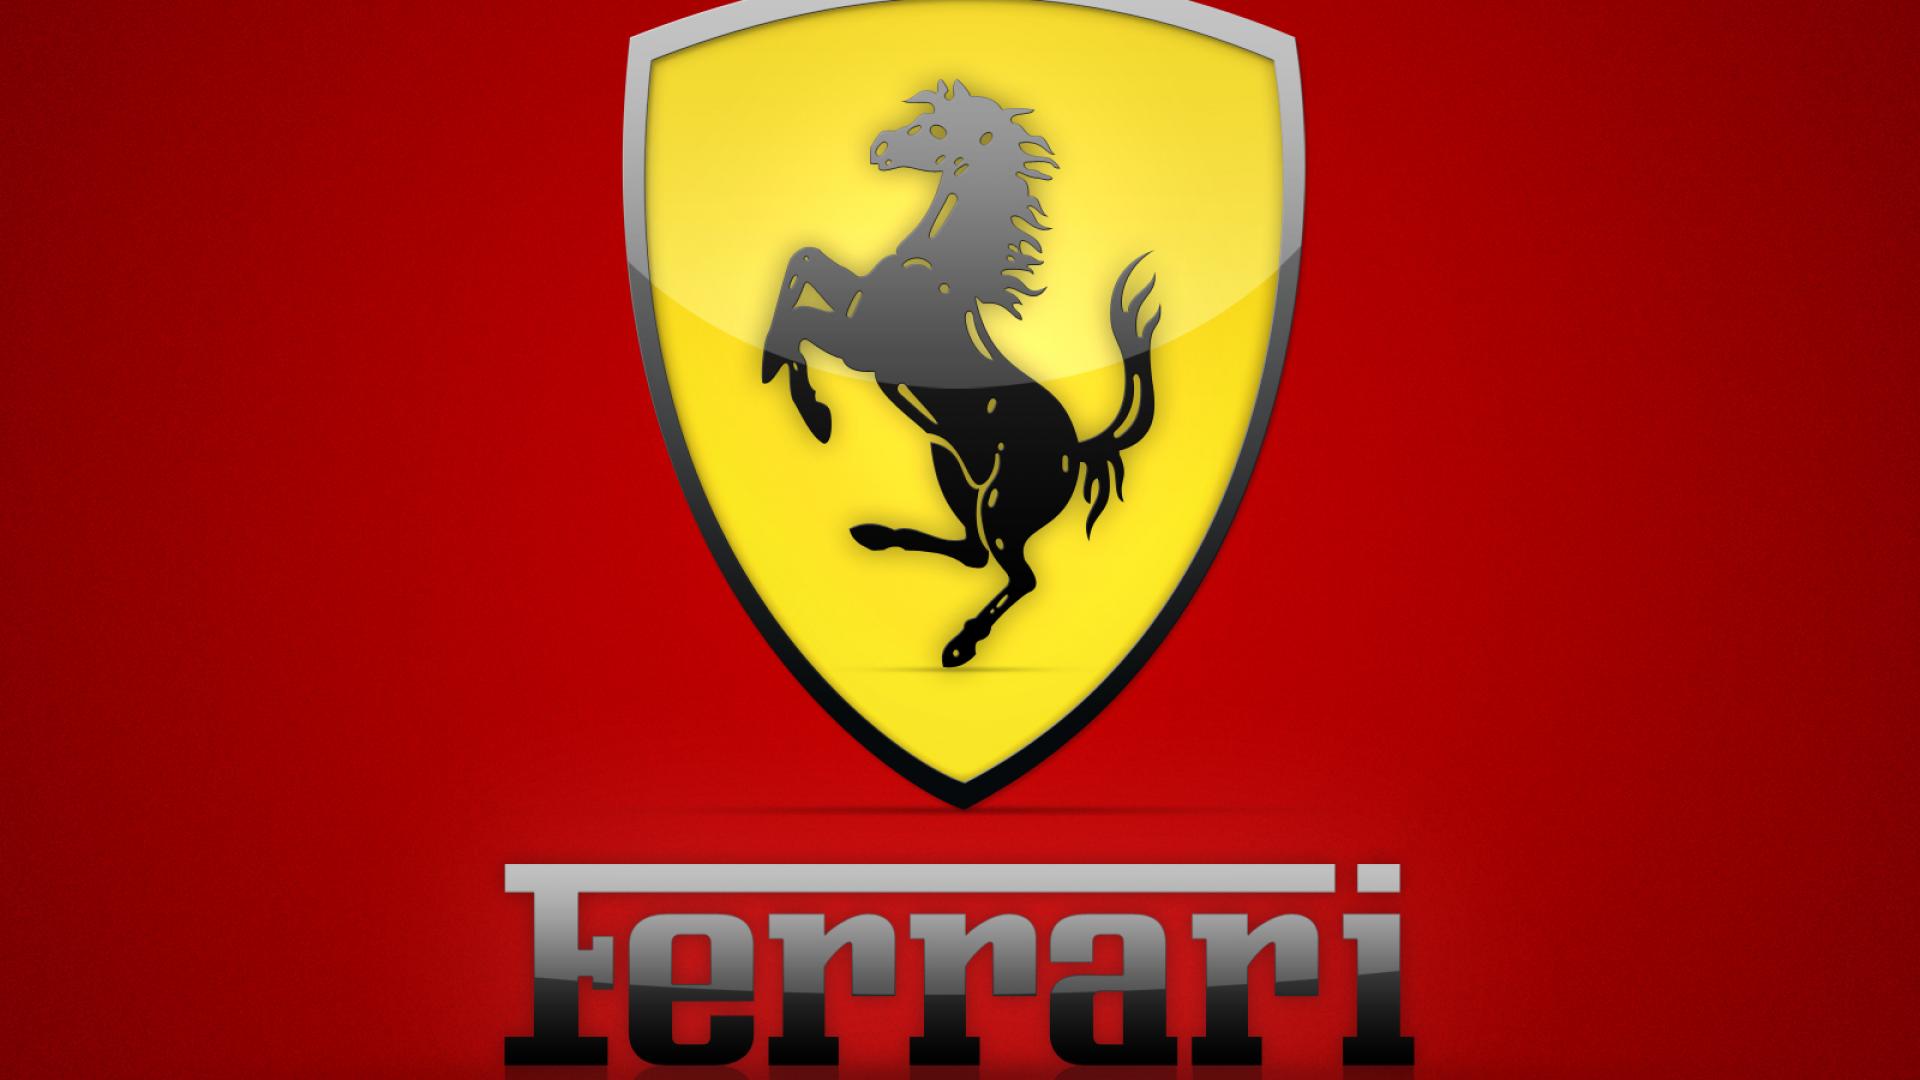 Ferrari, trimestre record: +19,4% utile netto